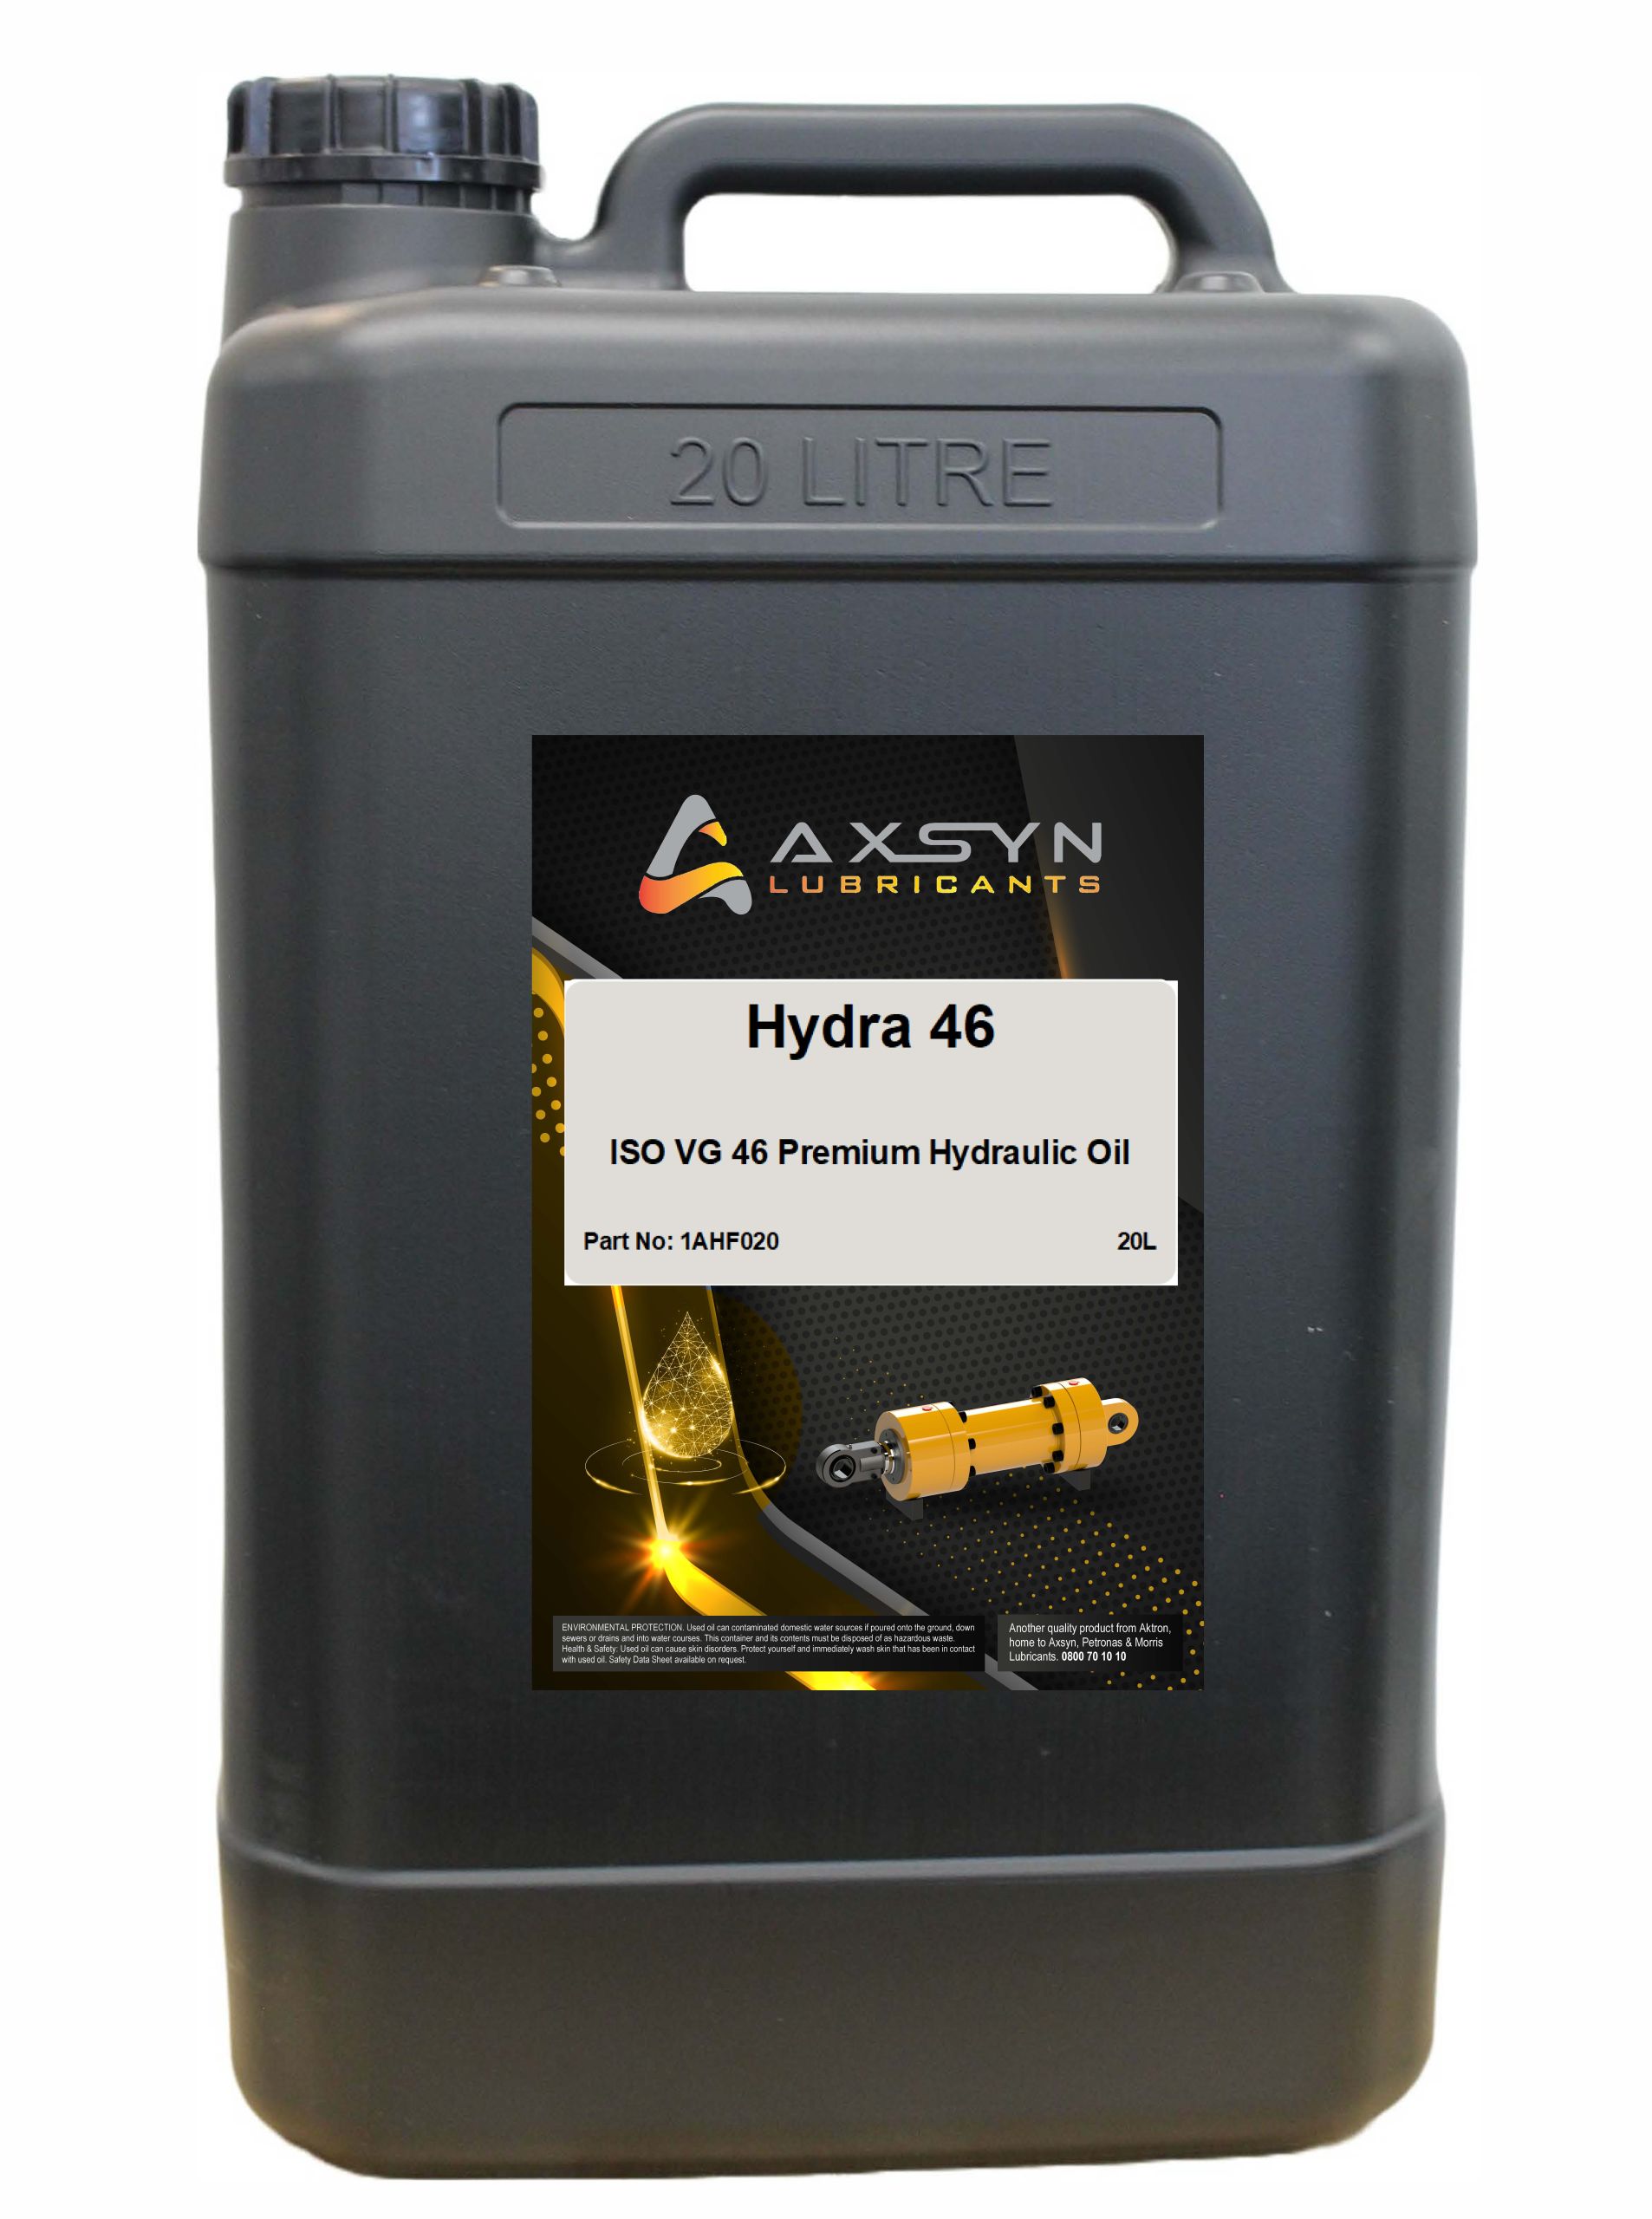 Axsyn Hydra 46